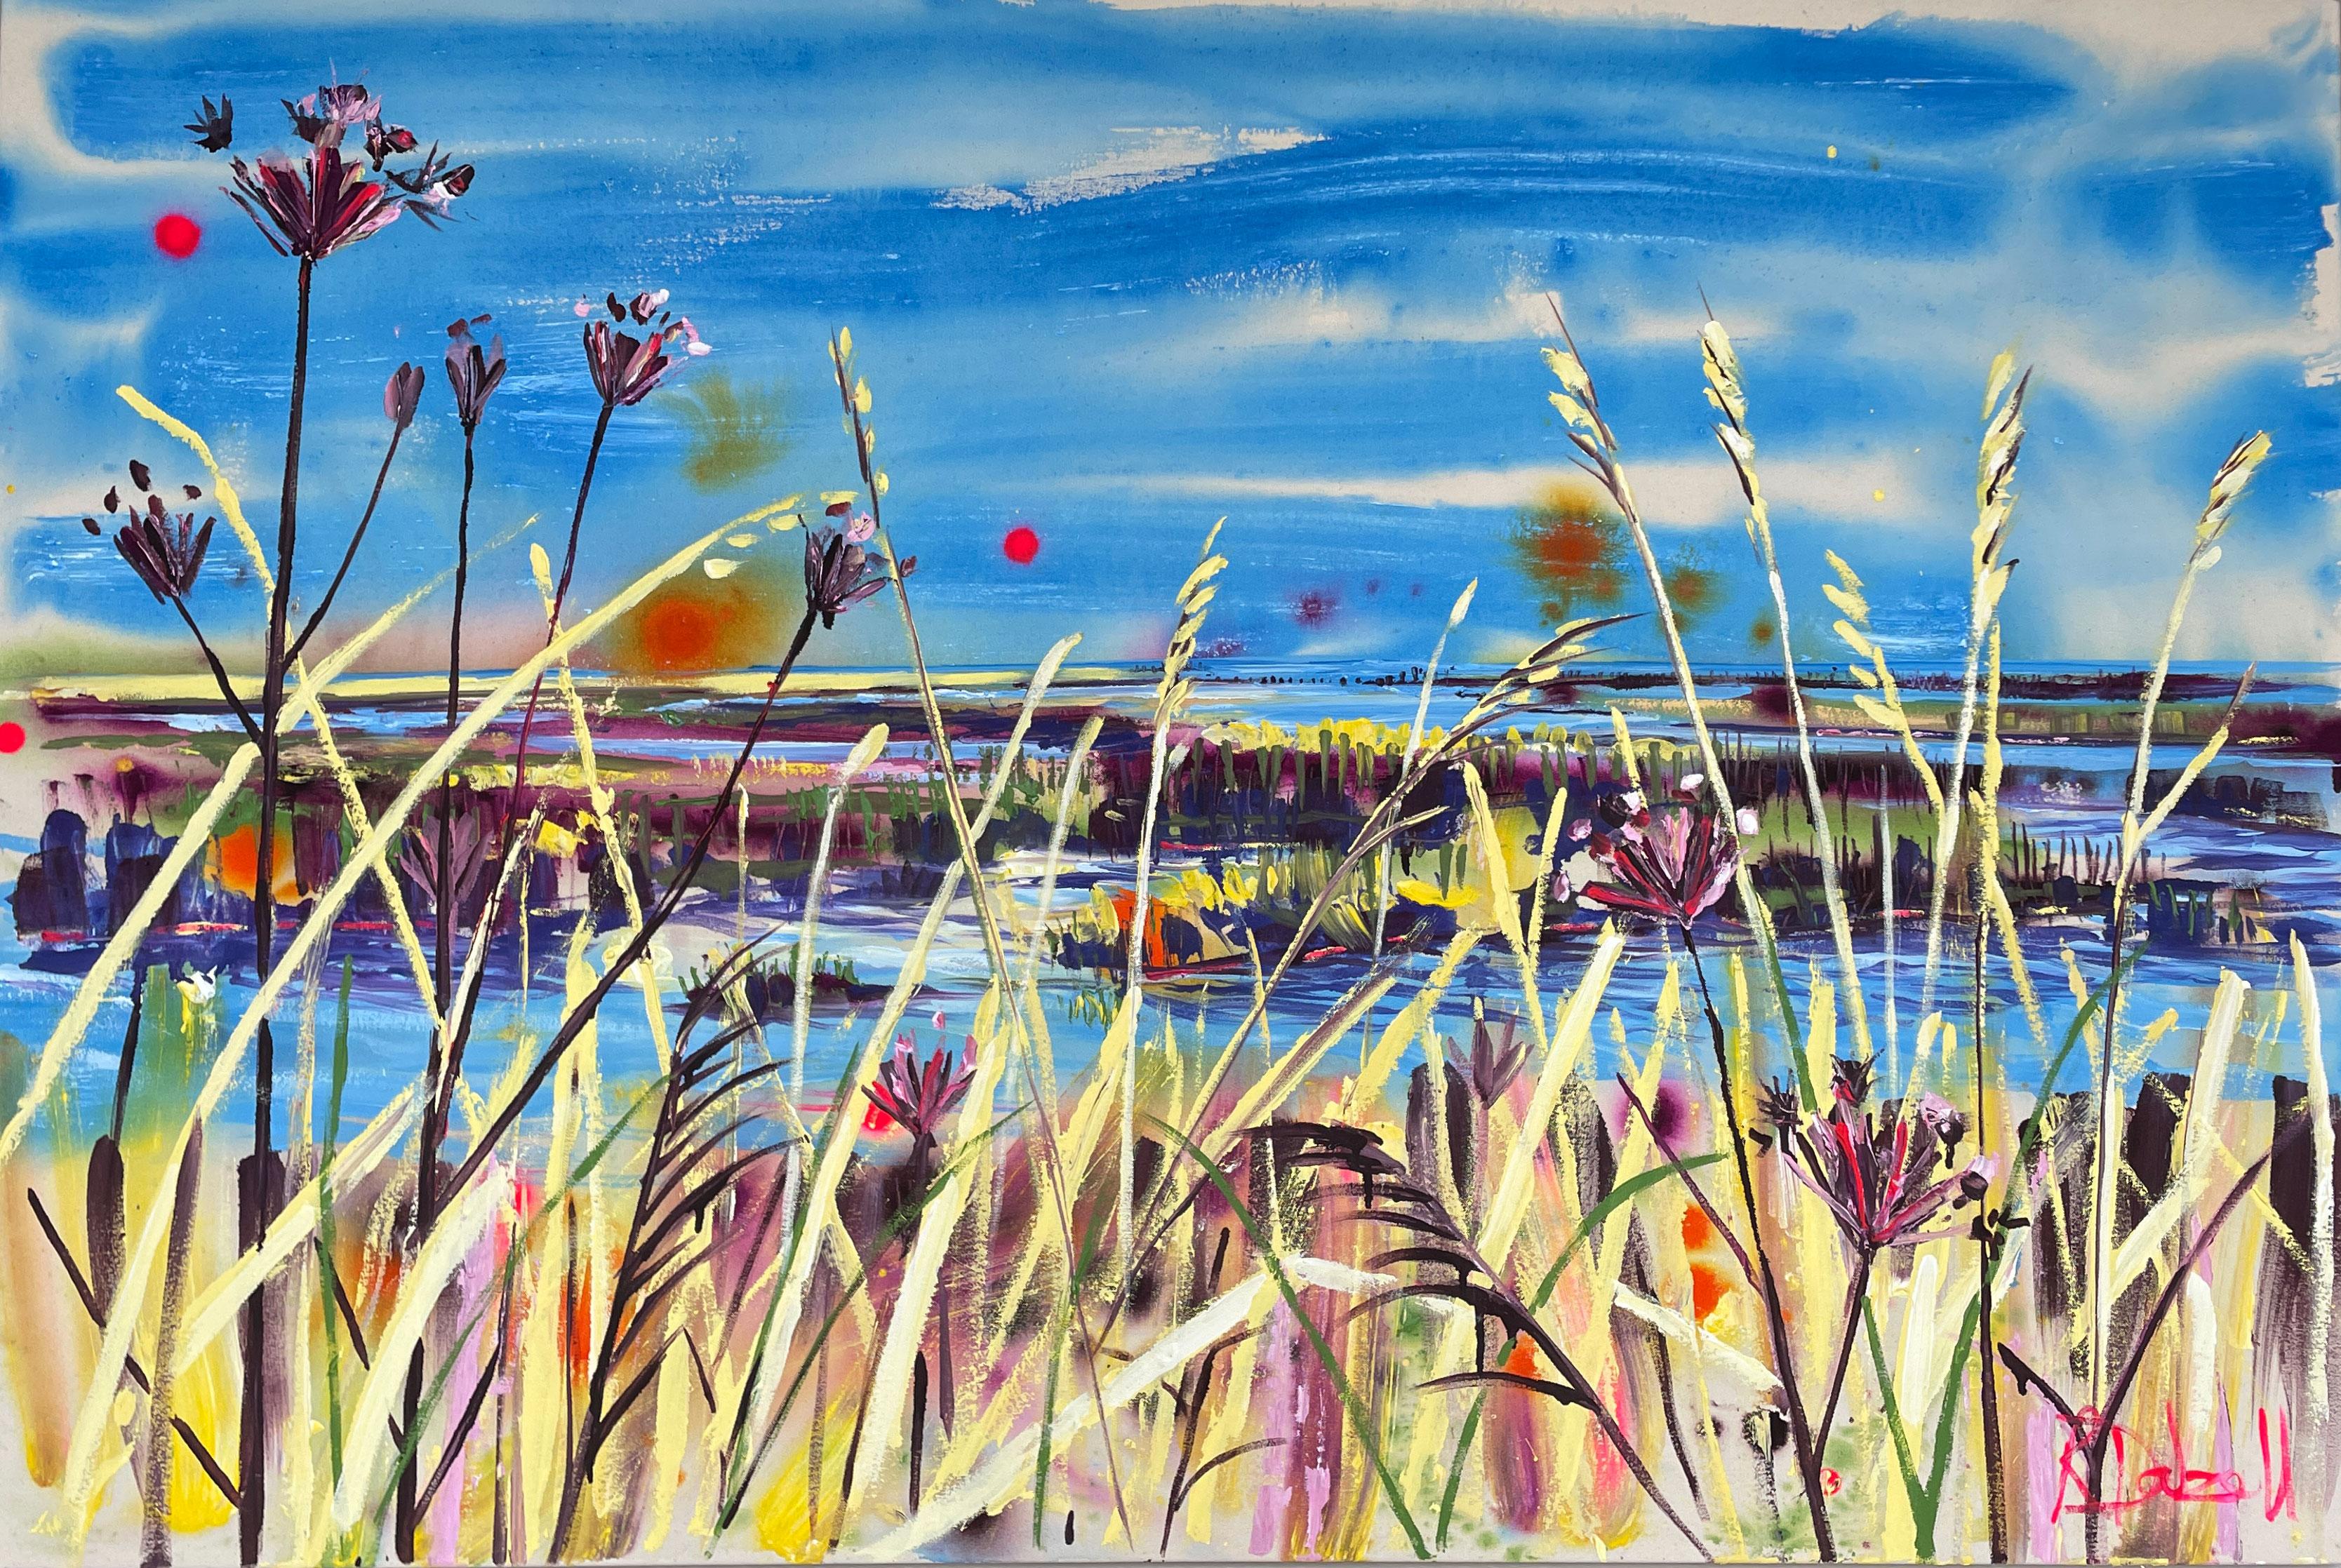 down by the marsh, painted in light" est une peinture expressive remplie de couleurs vibrantes et d'énergie.  Dalzell a choisi une palette chaude qui rappelle la faible luminosité des mois d'hiver.  La peinture est basée sur une promenade dans la